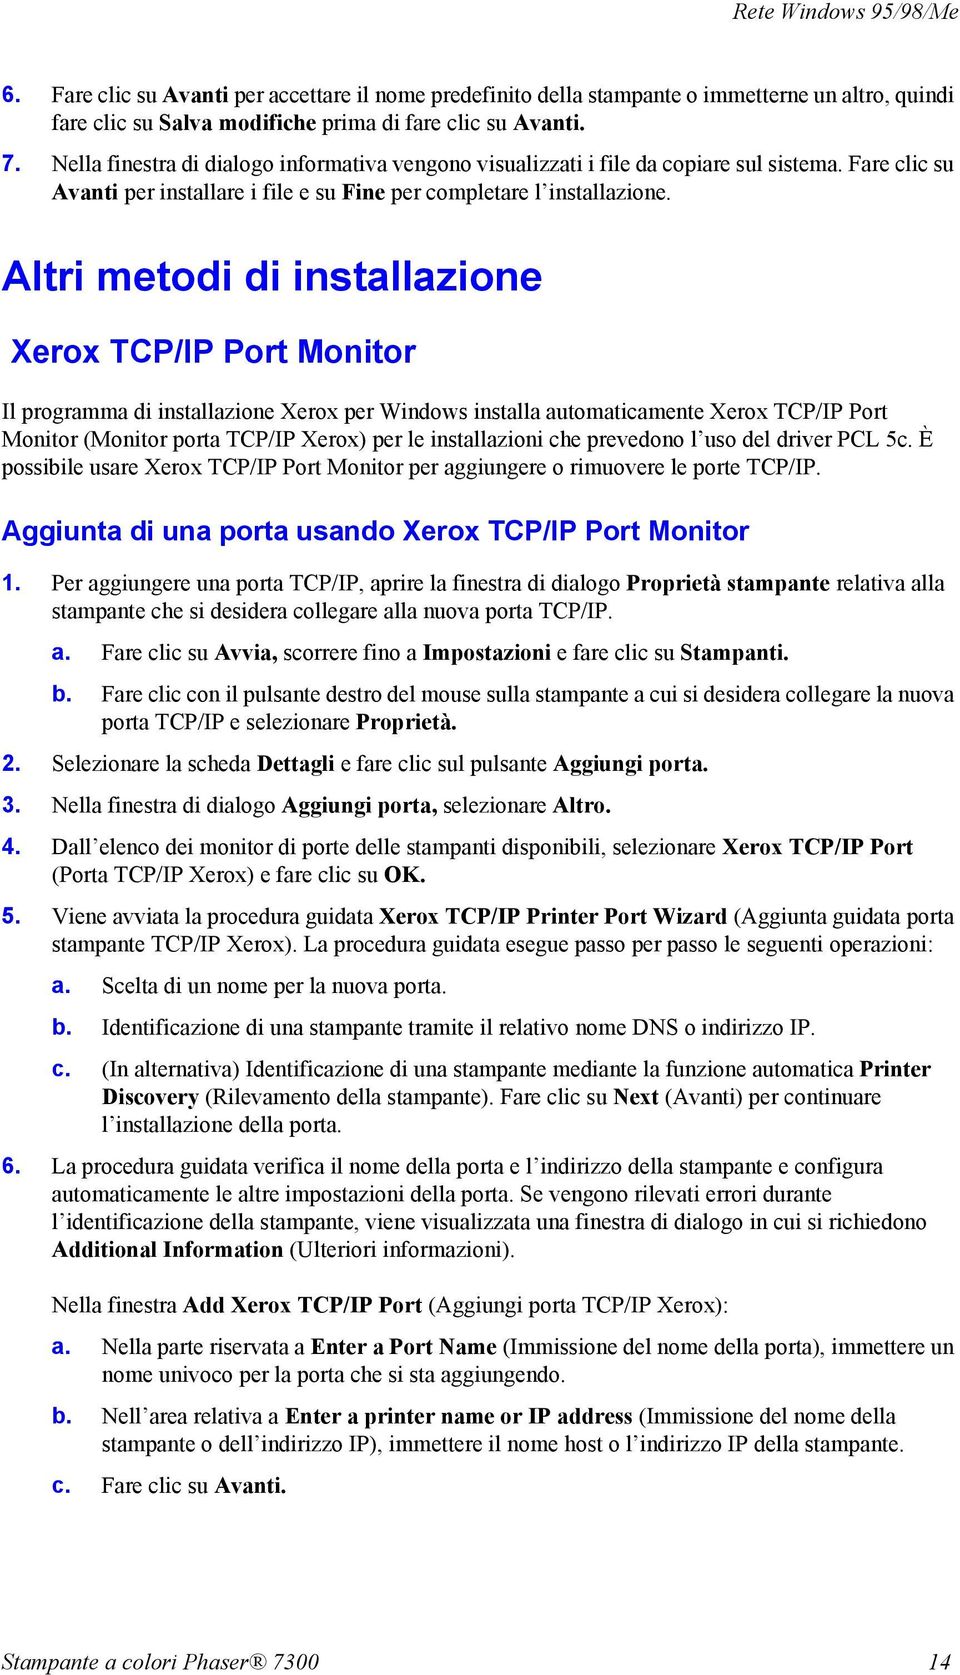 Altri metodi di installazione Xerox TCP/IP Port Monitor Il programma di installazione Xerox per Windows installa automaticamente Xerox TCP/IP Port Monitor (Monitor porta TCP/IP Xerox) per le